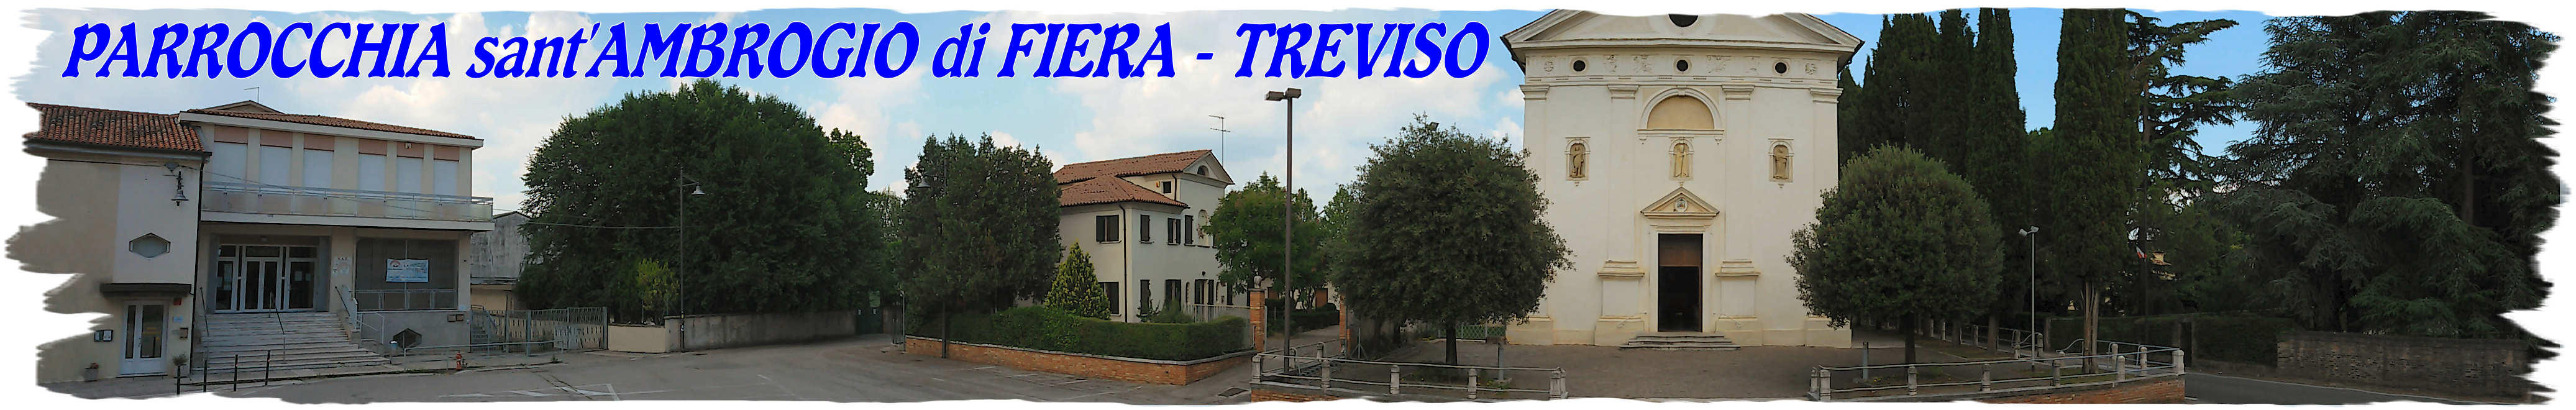 Parrocchia di FIERA - TREVISO